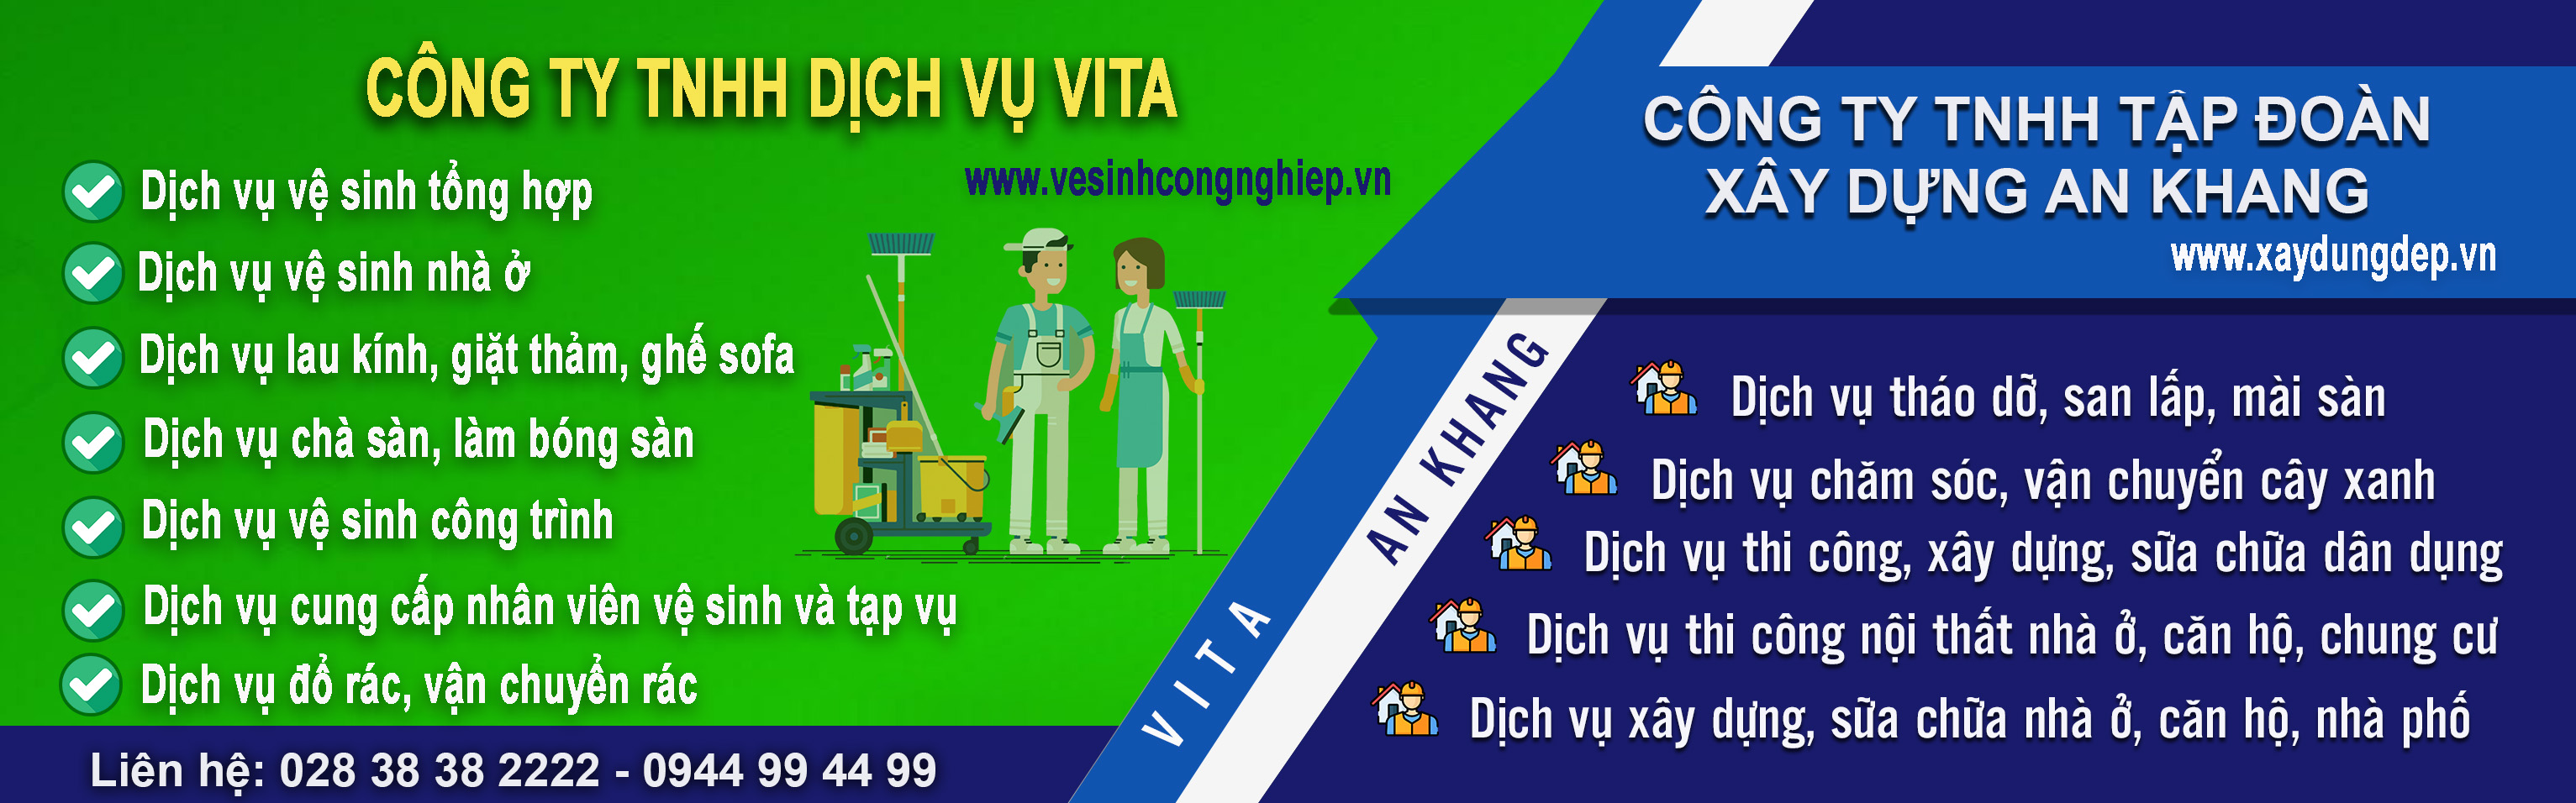 Tổng hợp dịch vụ Vita An Khang